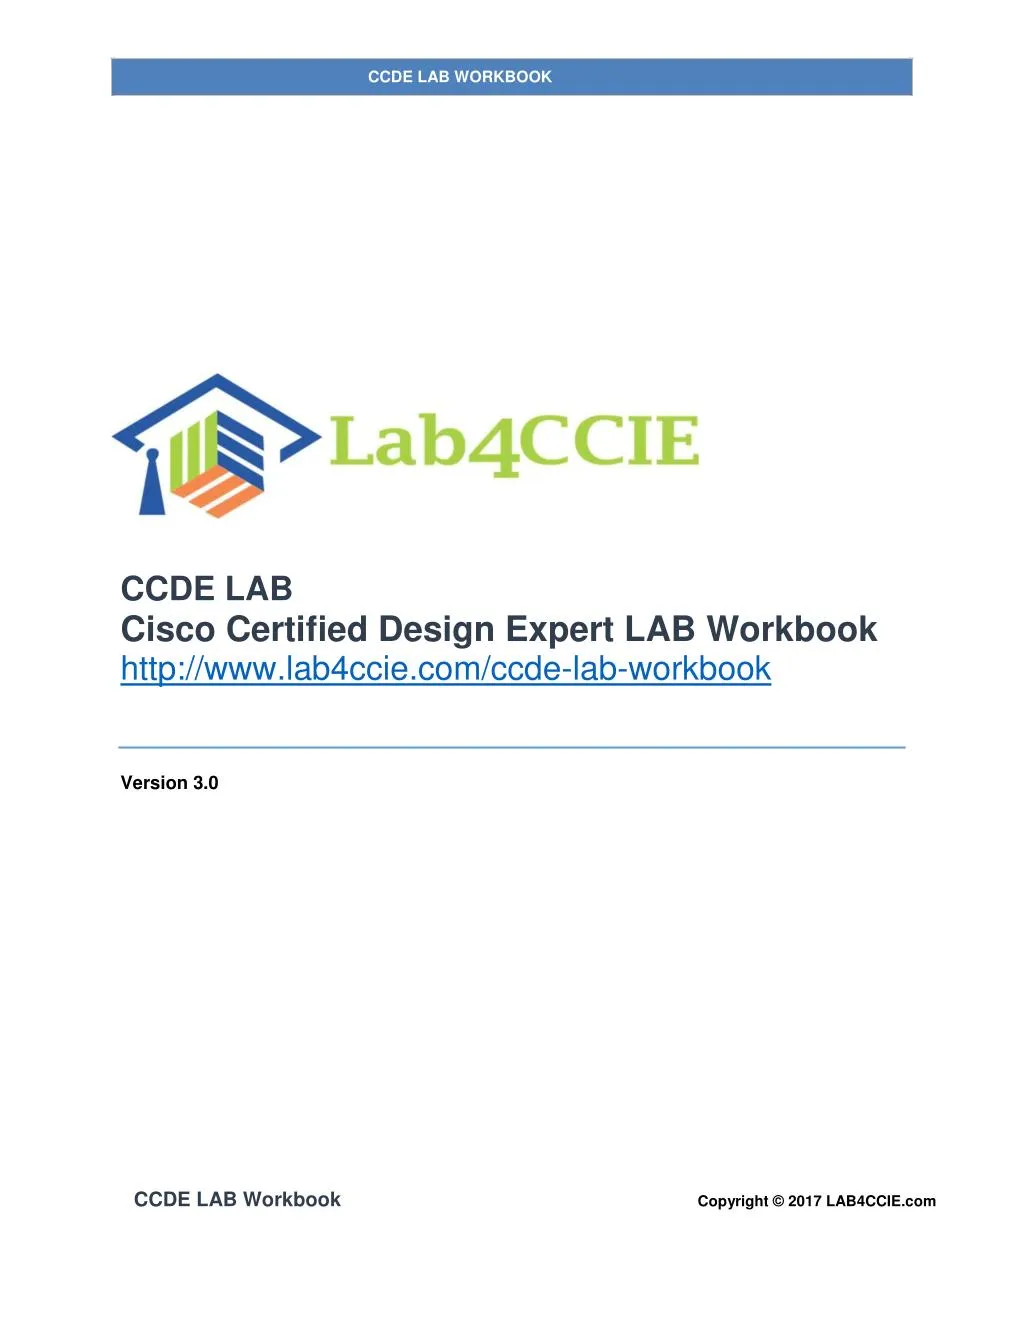 ccde lab workbook